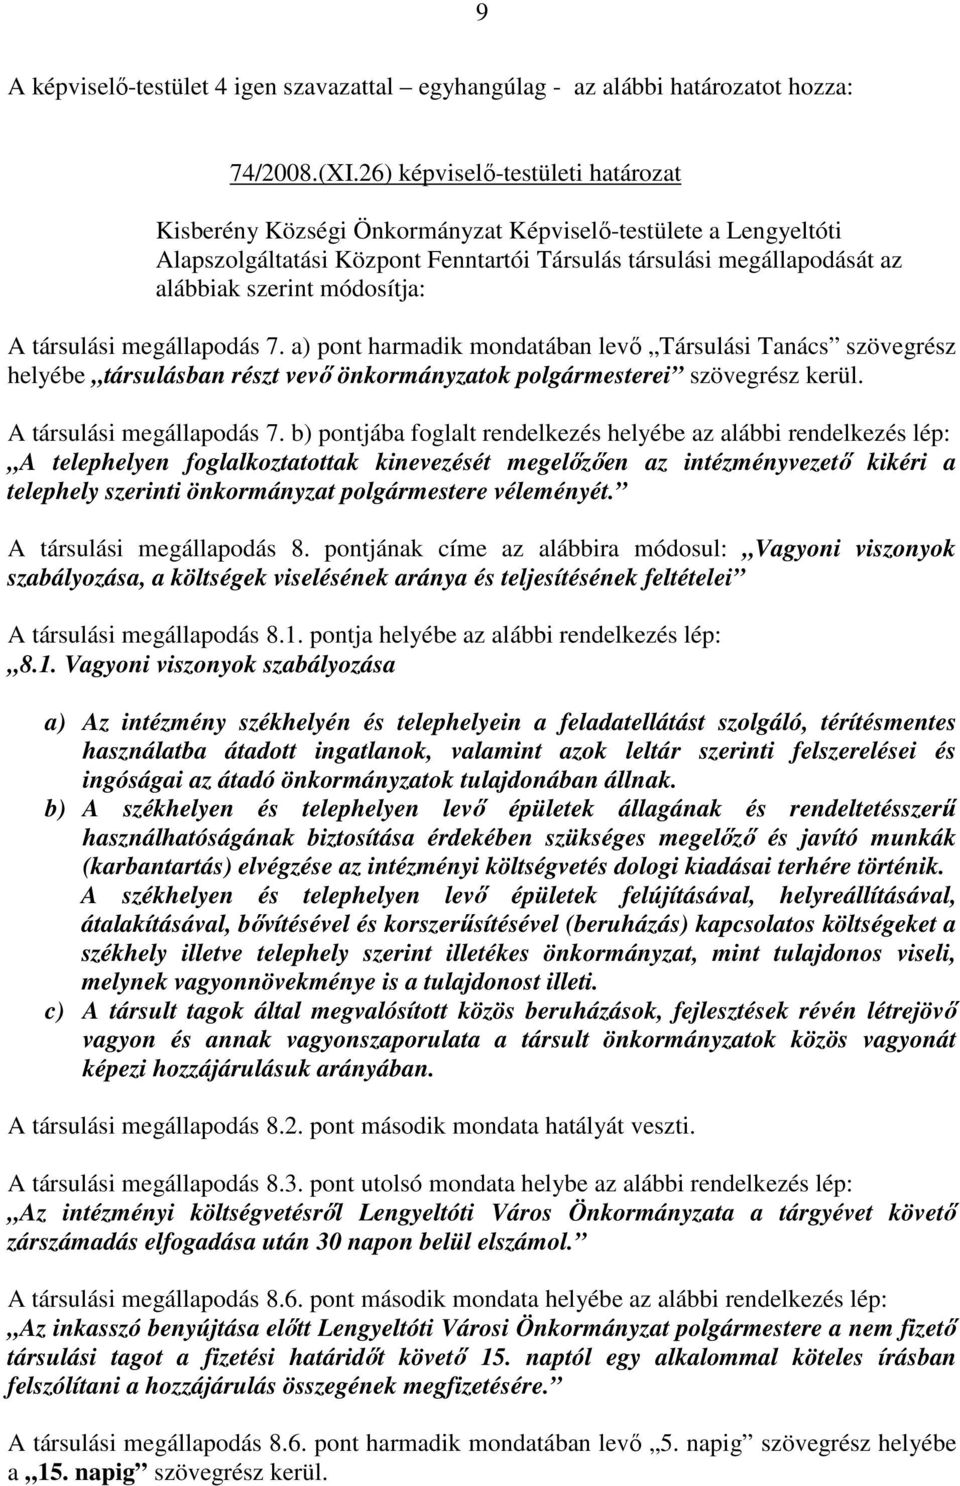 módosítja: A társulási megállapodás 7. a) pont harmadik mondatában levı Társulási Tanács szövegrész helyébe társulásban részt vevı önkormányzatok polgármesterei szövegrész kerül.